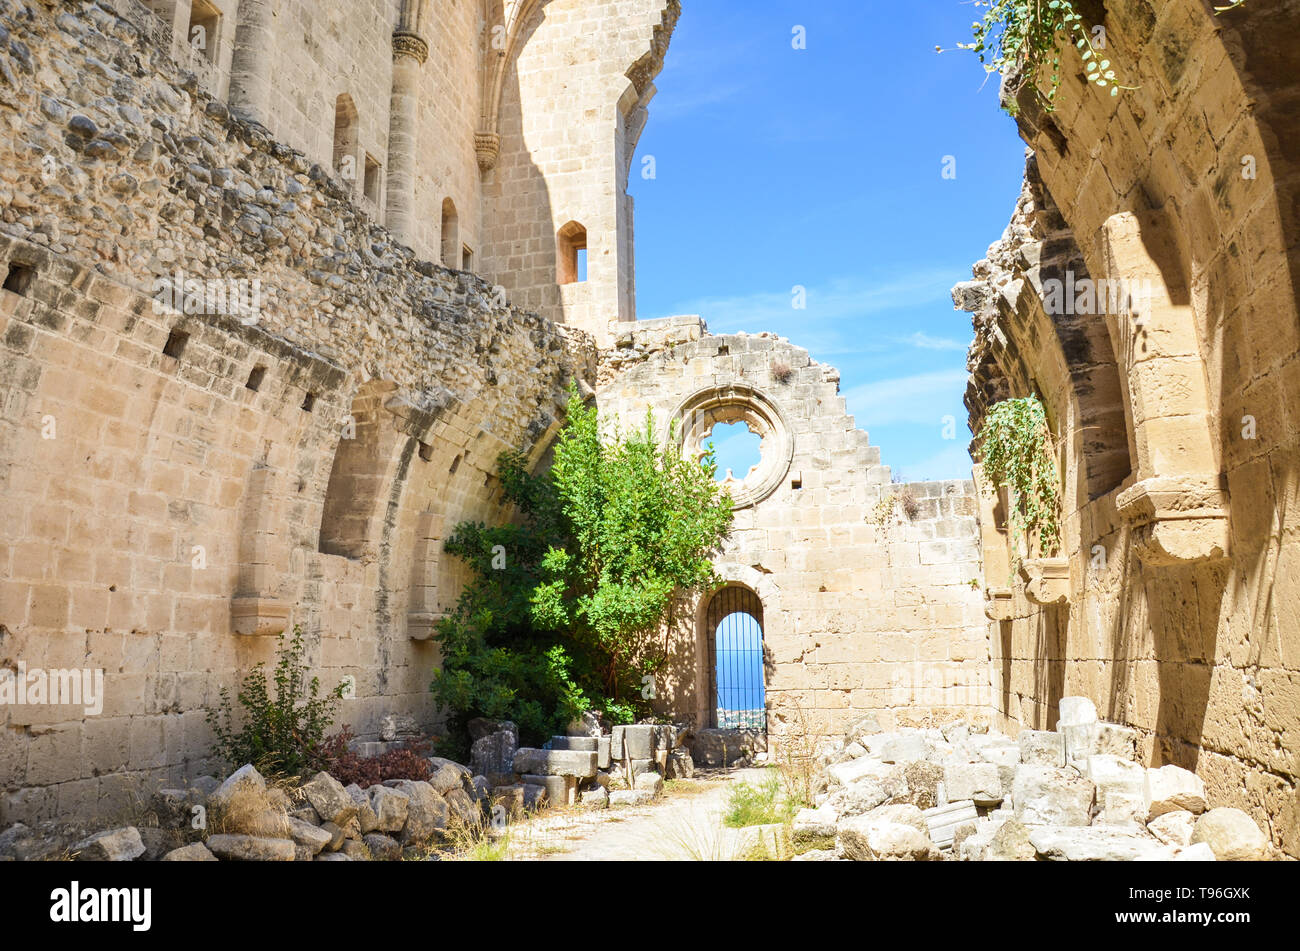 Die Ruinen der mittelalterlichen Abtei Bellapais im türkischen Nordzypern genommen an einem sonnigen Tag mit blauen Himmel. Die historische zypriotischen Kloster ist eine beliebte Sehenswürdigkeit. Stockfoto